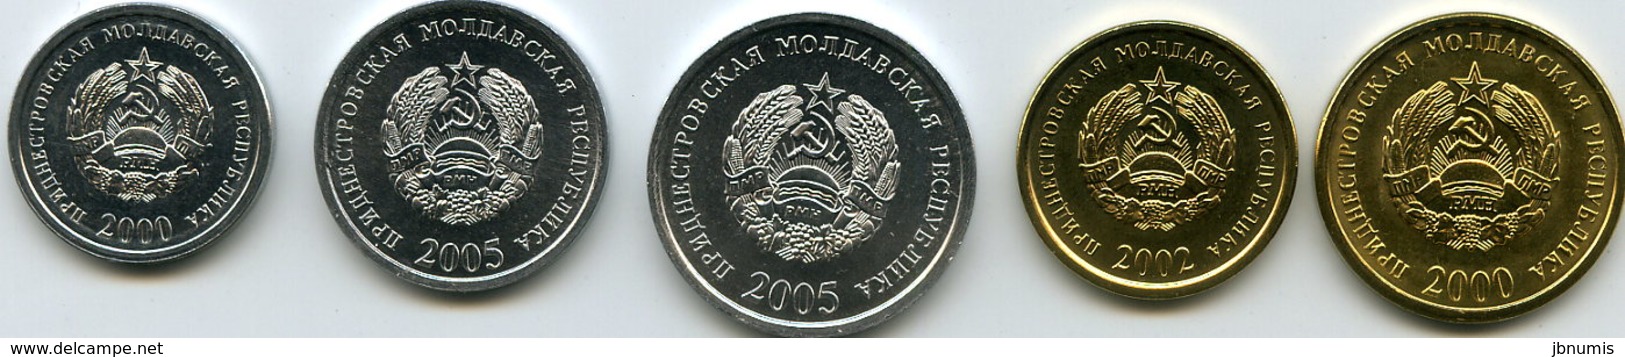 Moldavie Transdniestrie Transdnistria Série De 5 Pièces 1 à 50 Kopeek 2000 - 2005 Unc - Moldavia